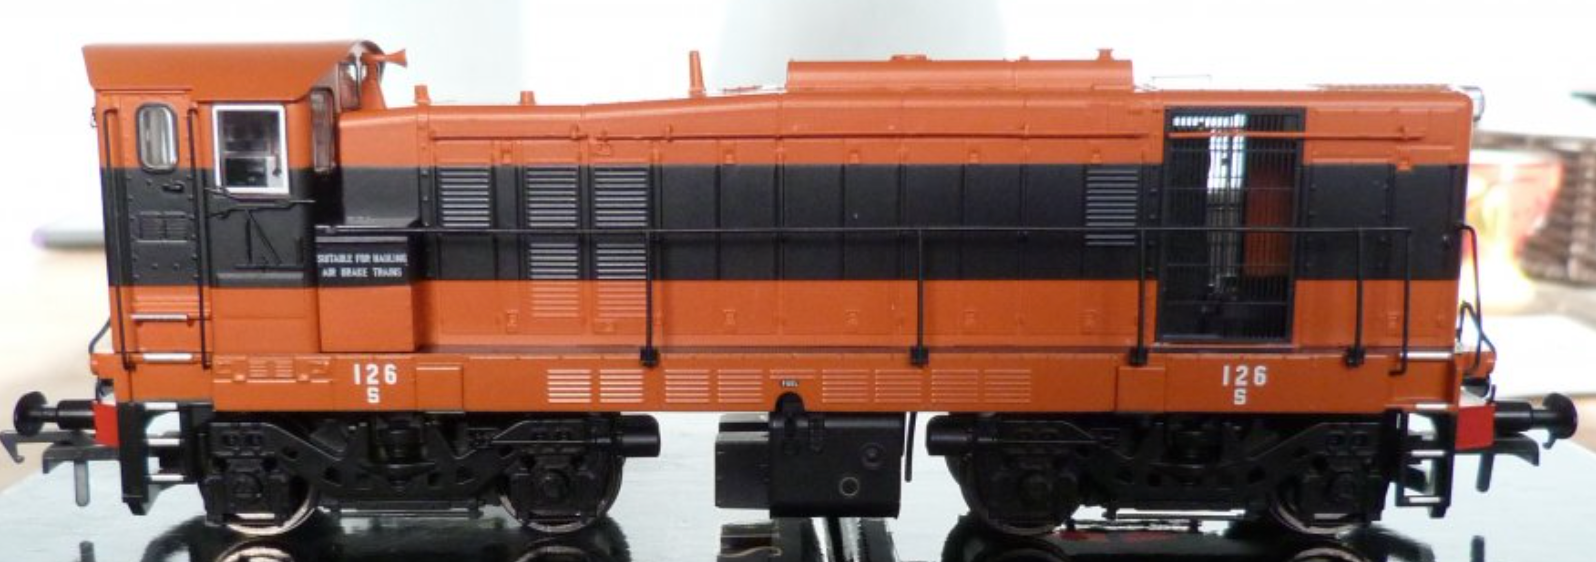 126 - Class 121 Locomotive - Supertrain